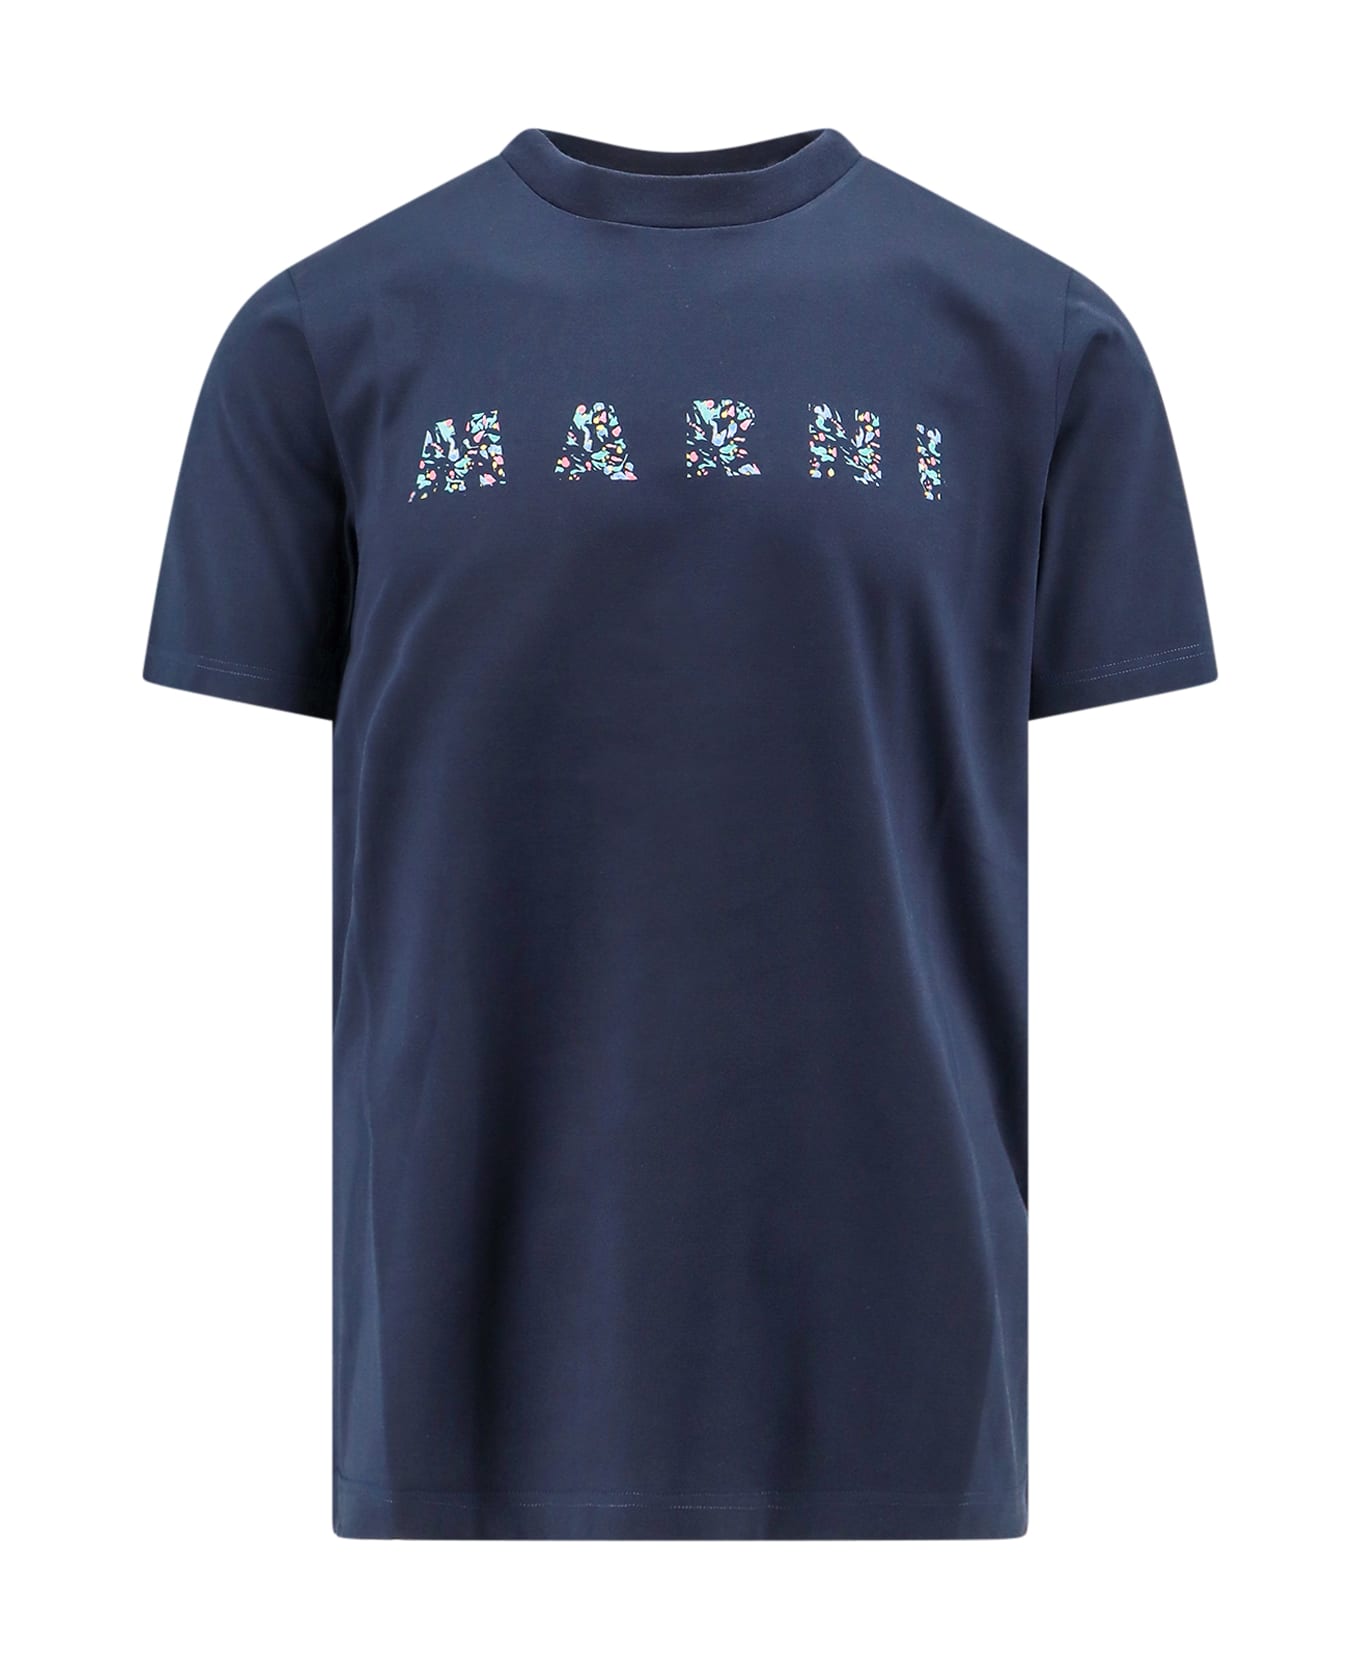 Marni T-shirt - Blu notte